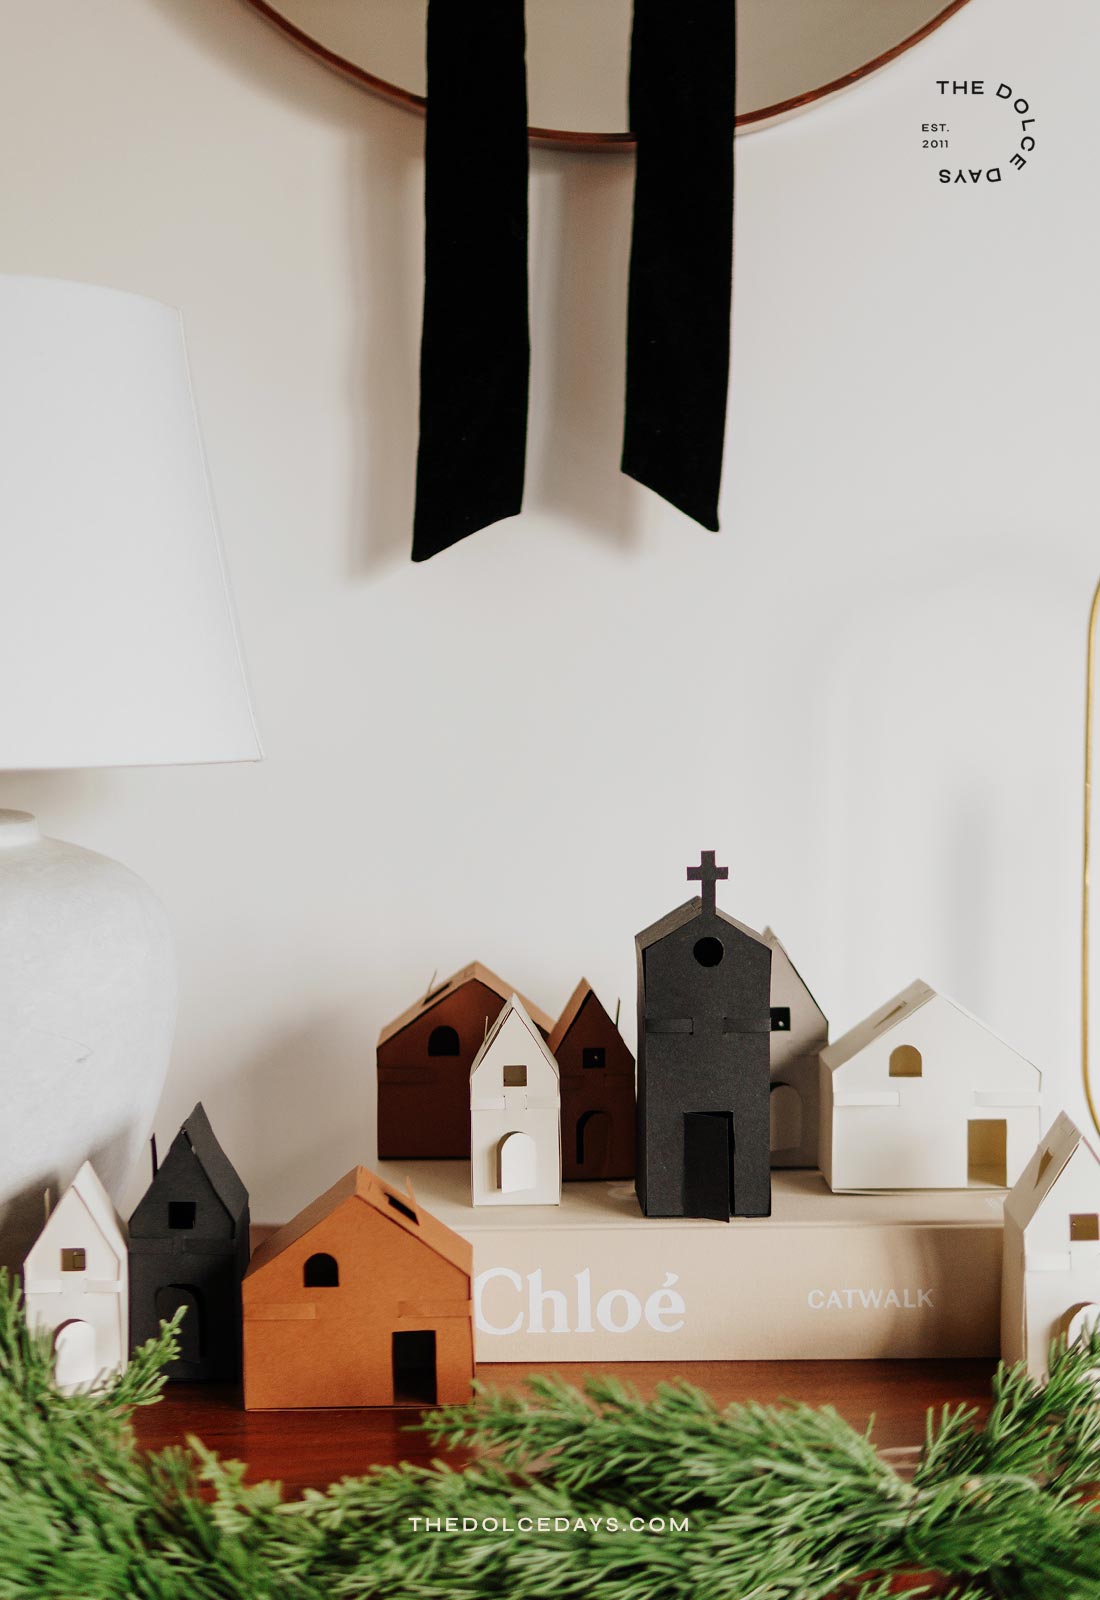 Detalhe da vila natalina com casinhas em papel feita em casa.